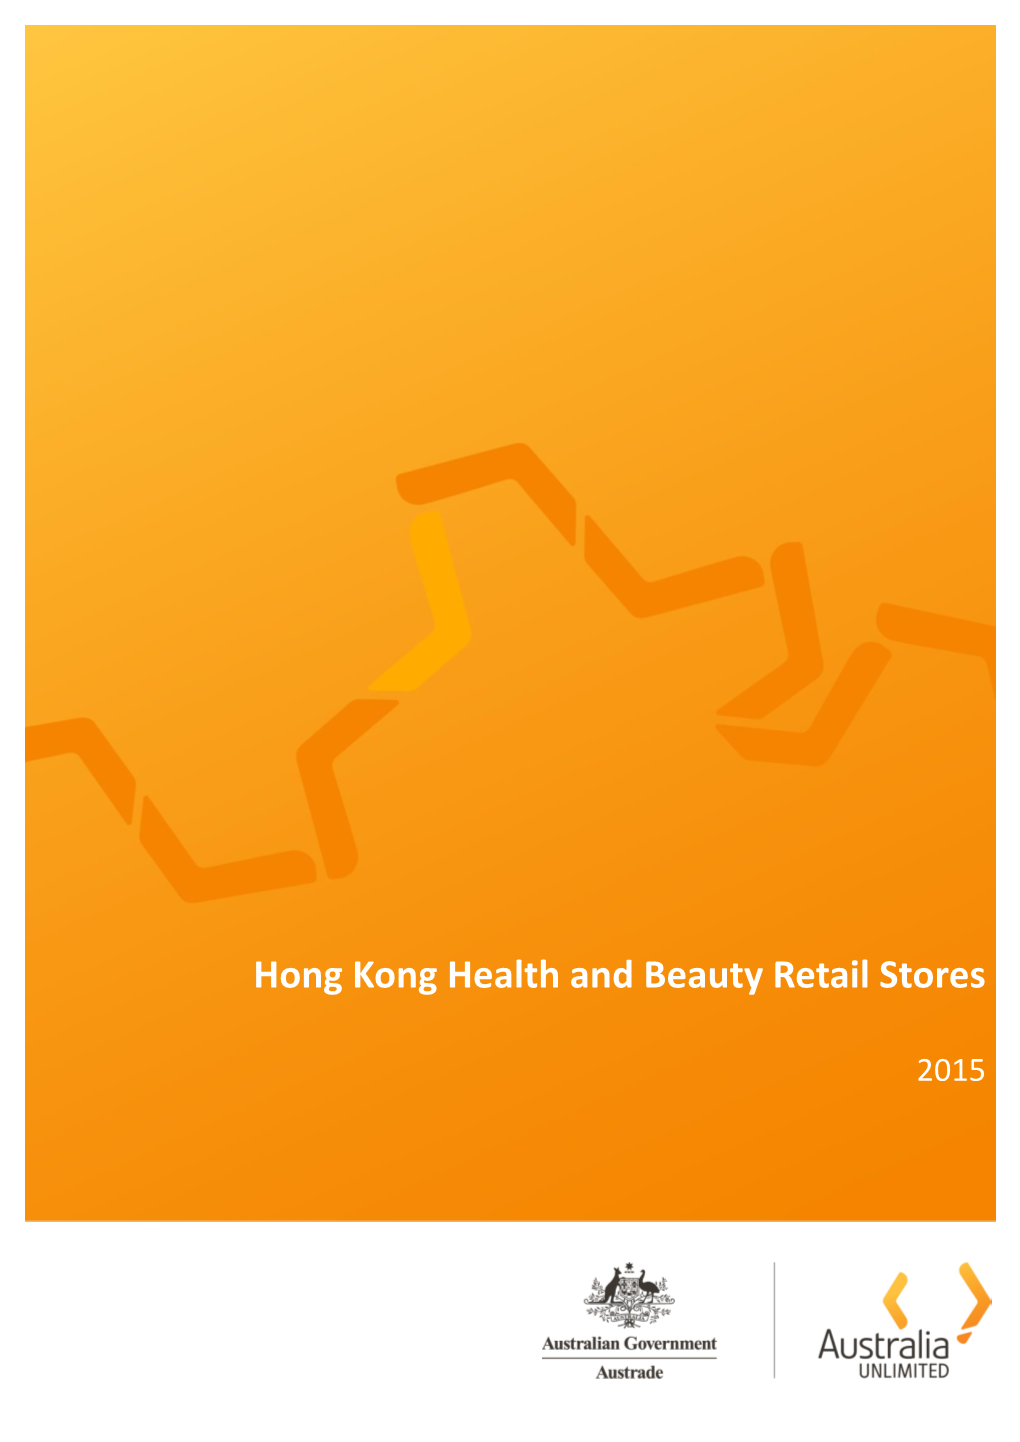 Hong Kong Health and Beauty Retail Stores